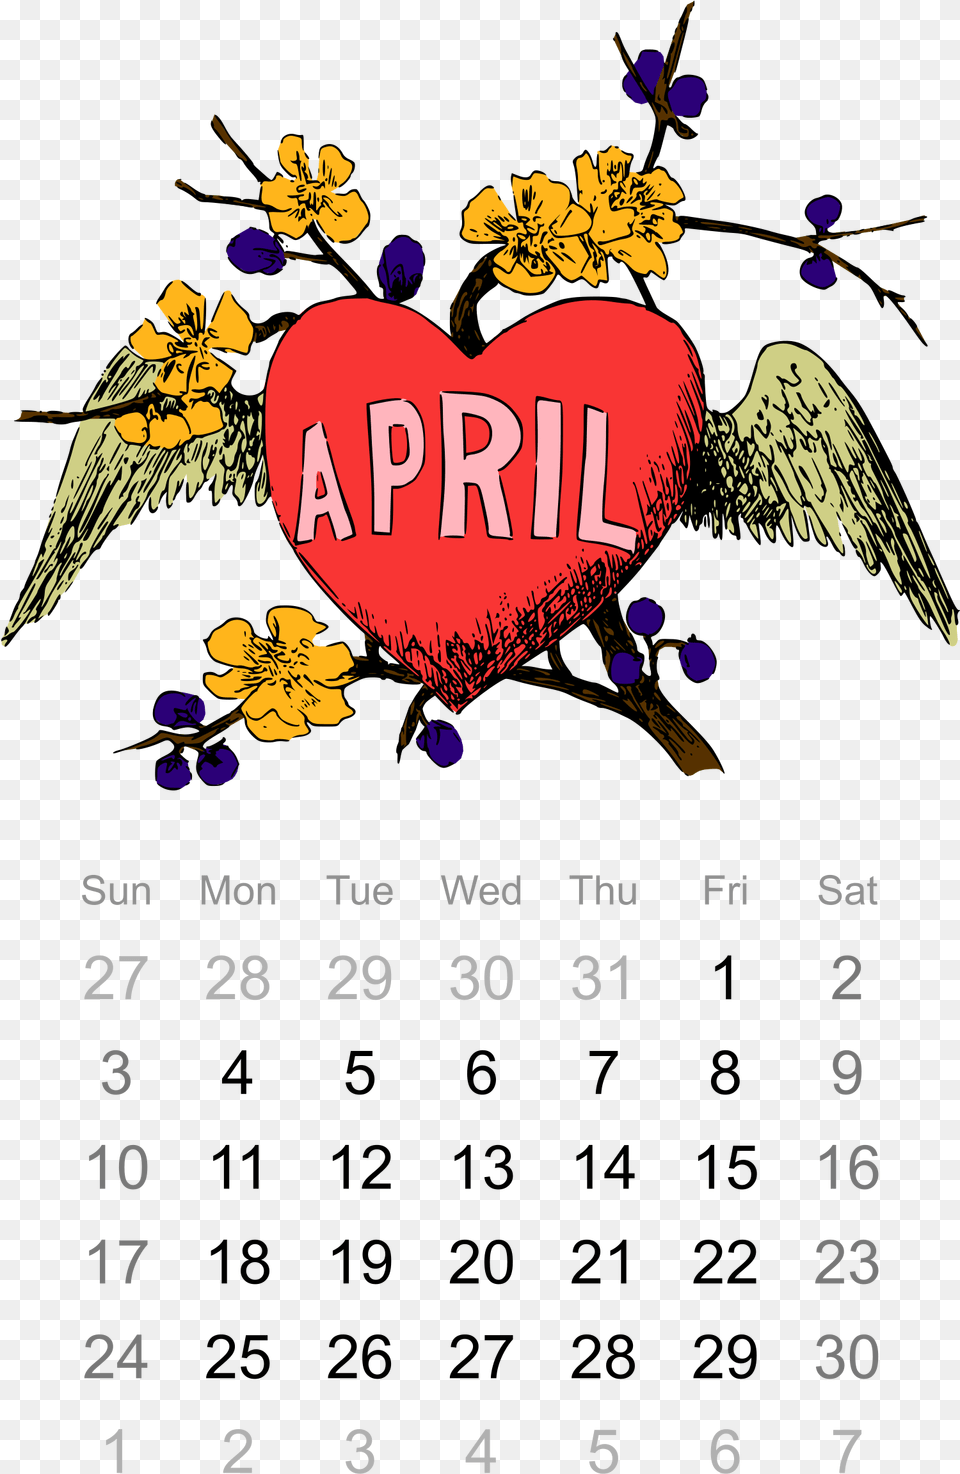 This Icons Design Of 2016 April Calendar, Text, Animal, Bird, Symbol Png Image